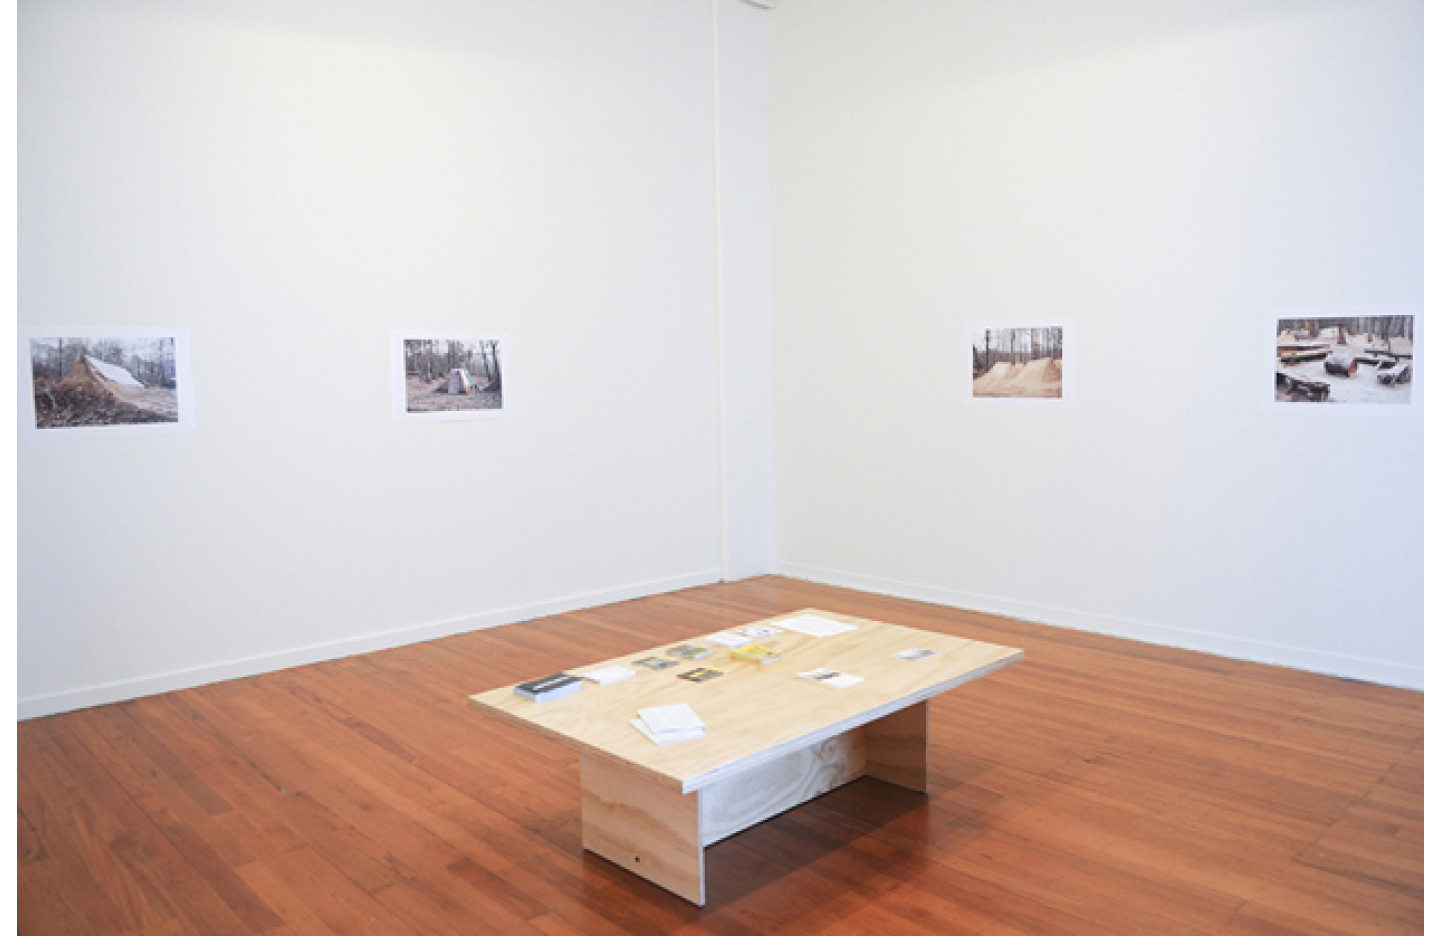 Under, Ramp Gallery (2013)